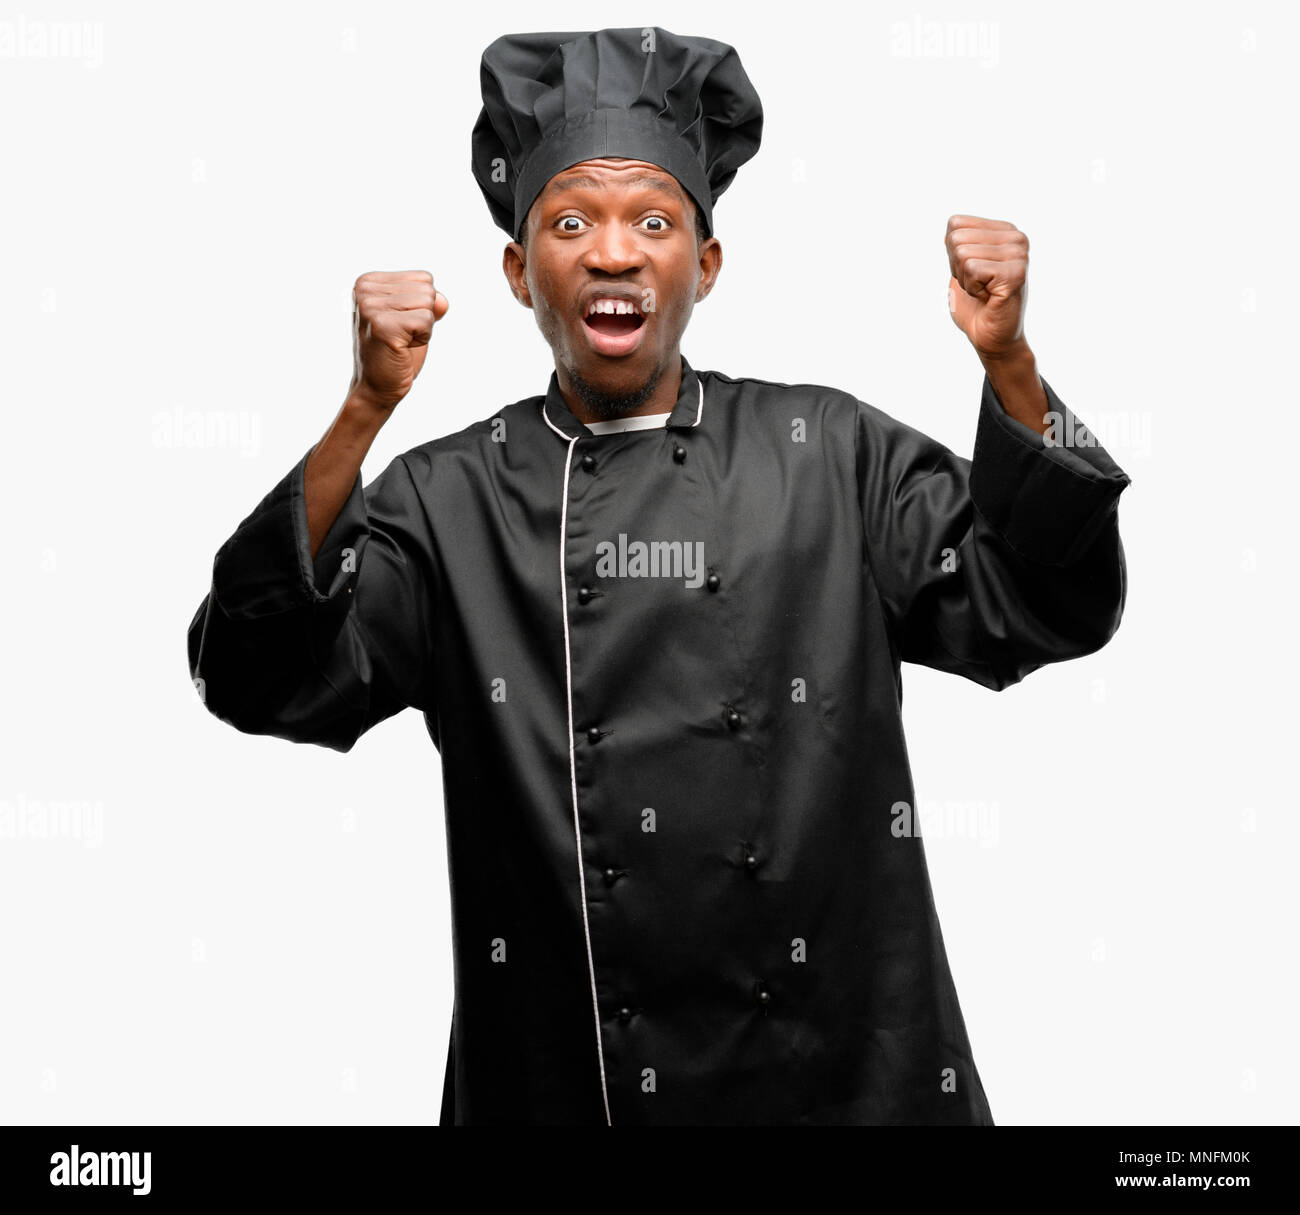 Jeune chef cuisinier noir wearing hat heureux et excité célébrant la  victoire l'expression de grand succès, la puissance, l'énergie et des  émotions positives. Célèbre de nouveaux jo Photo Stock - Alamy